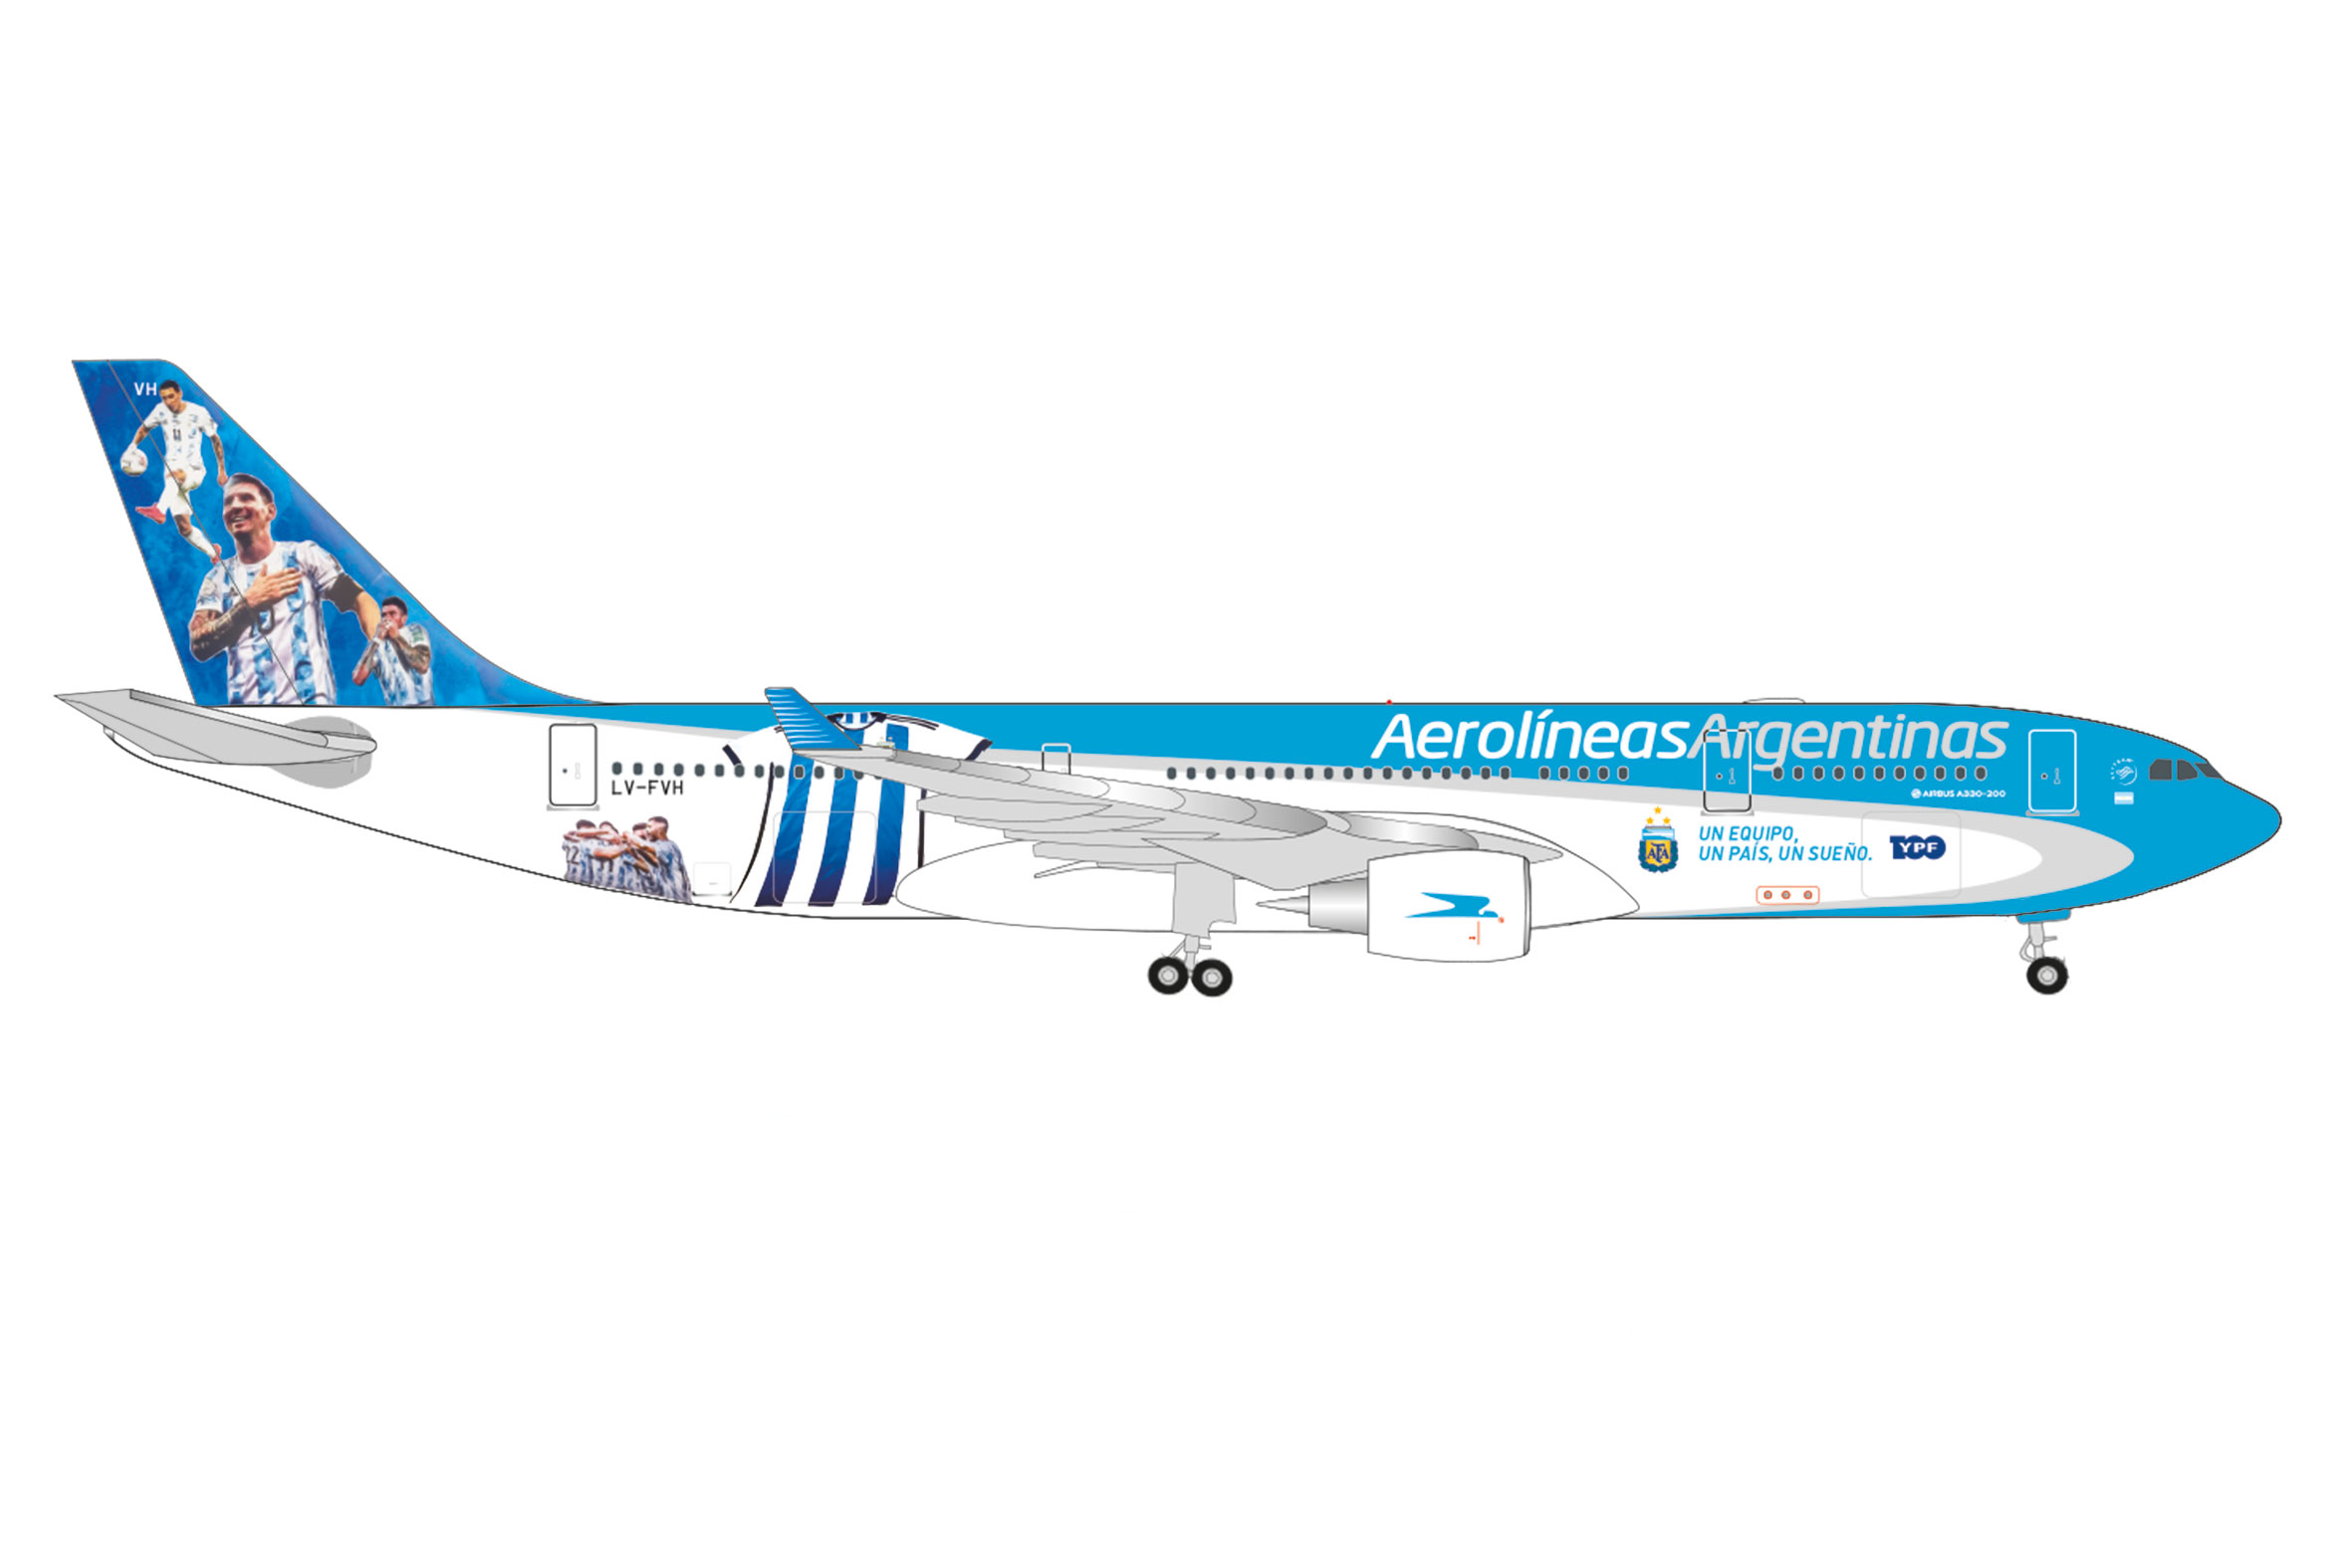 Aerolíneas Argentinas Airbus A330-200